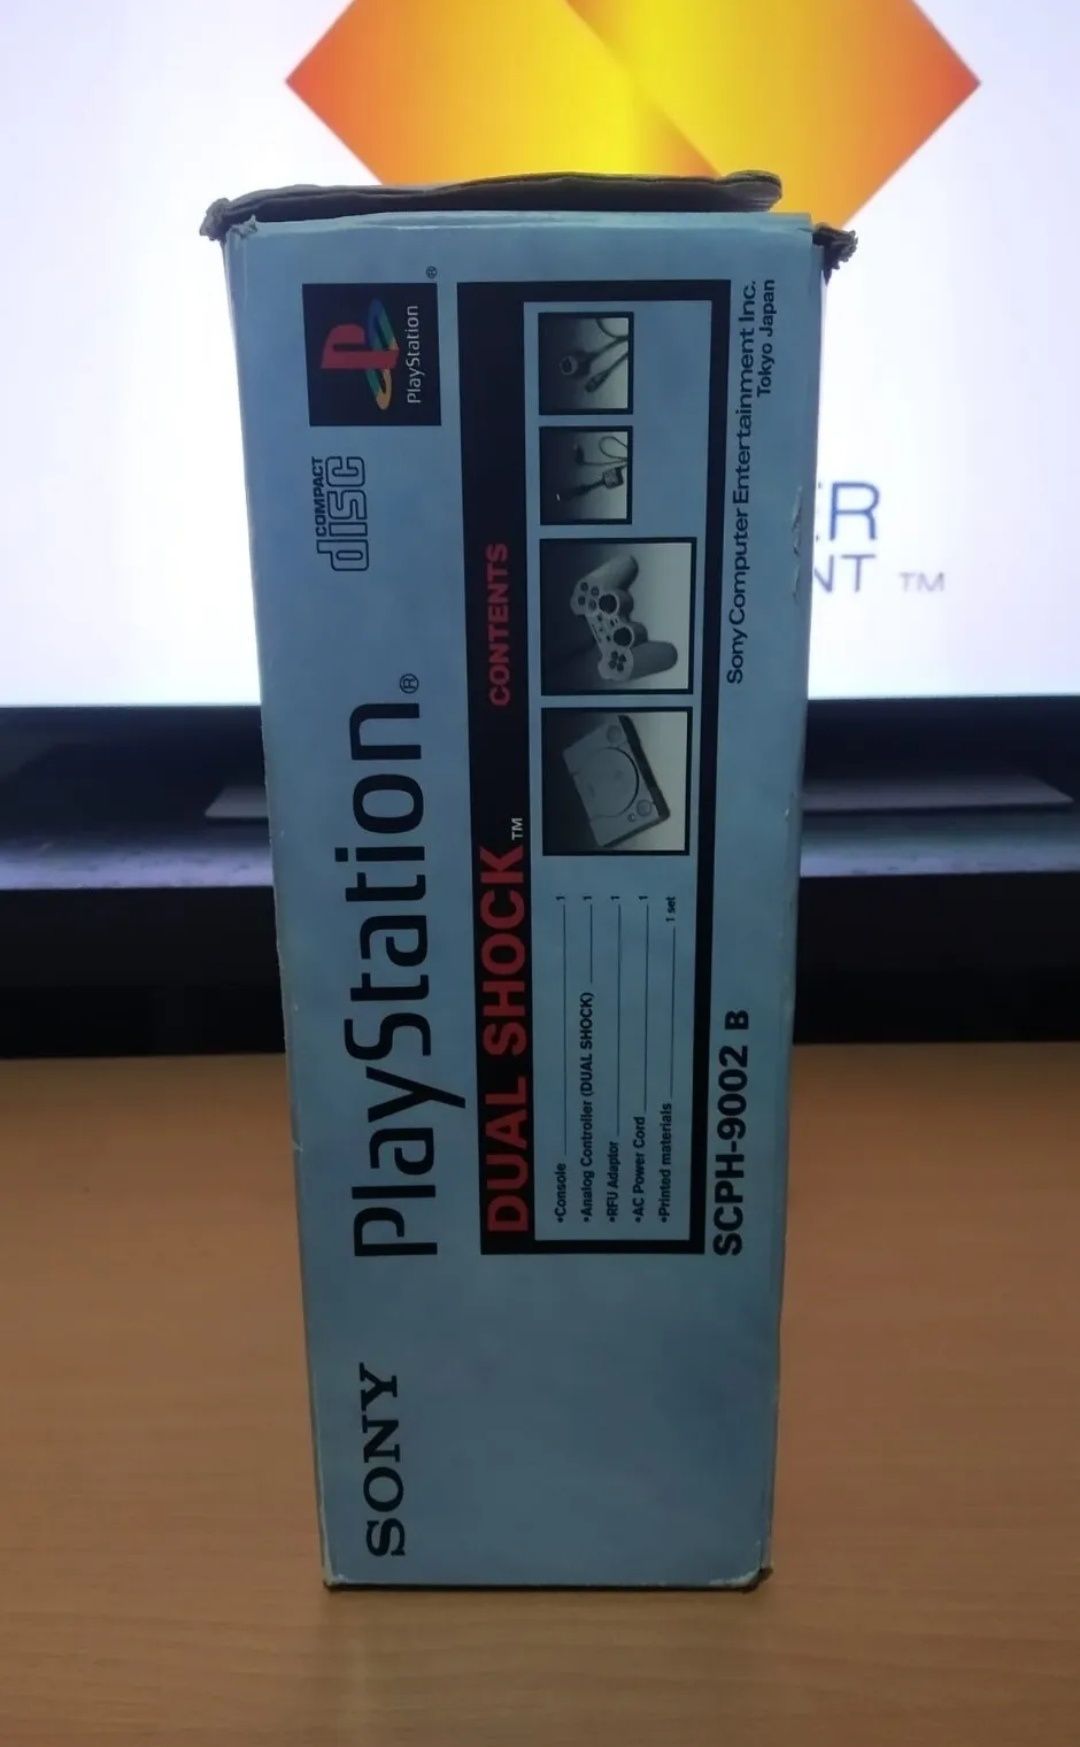 Playstation 1 SCPH-9002 B / PAL